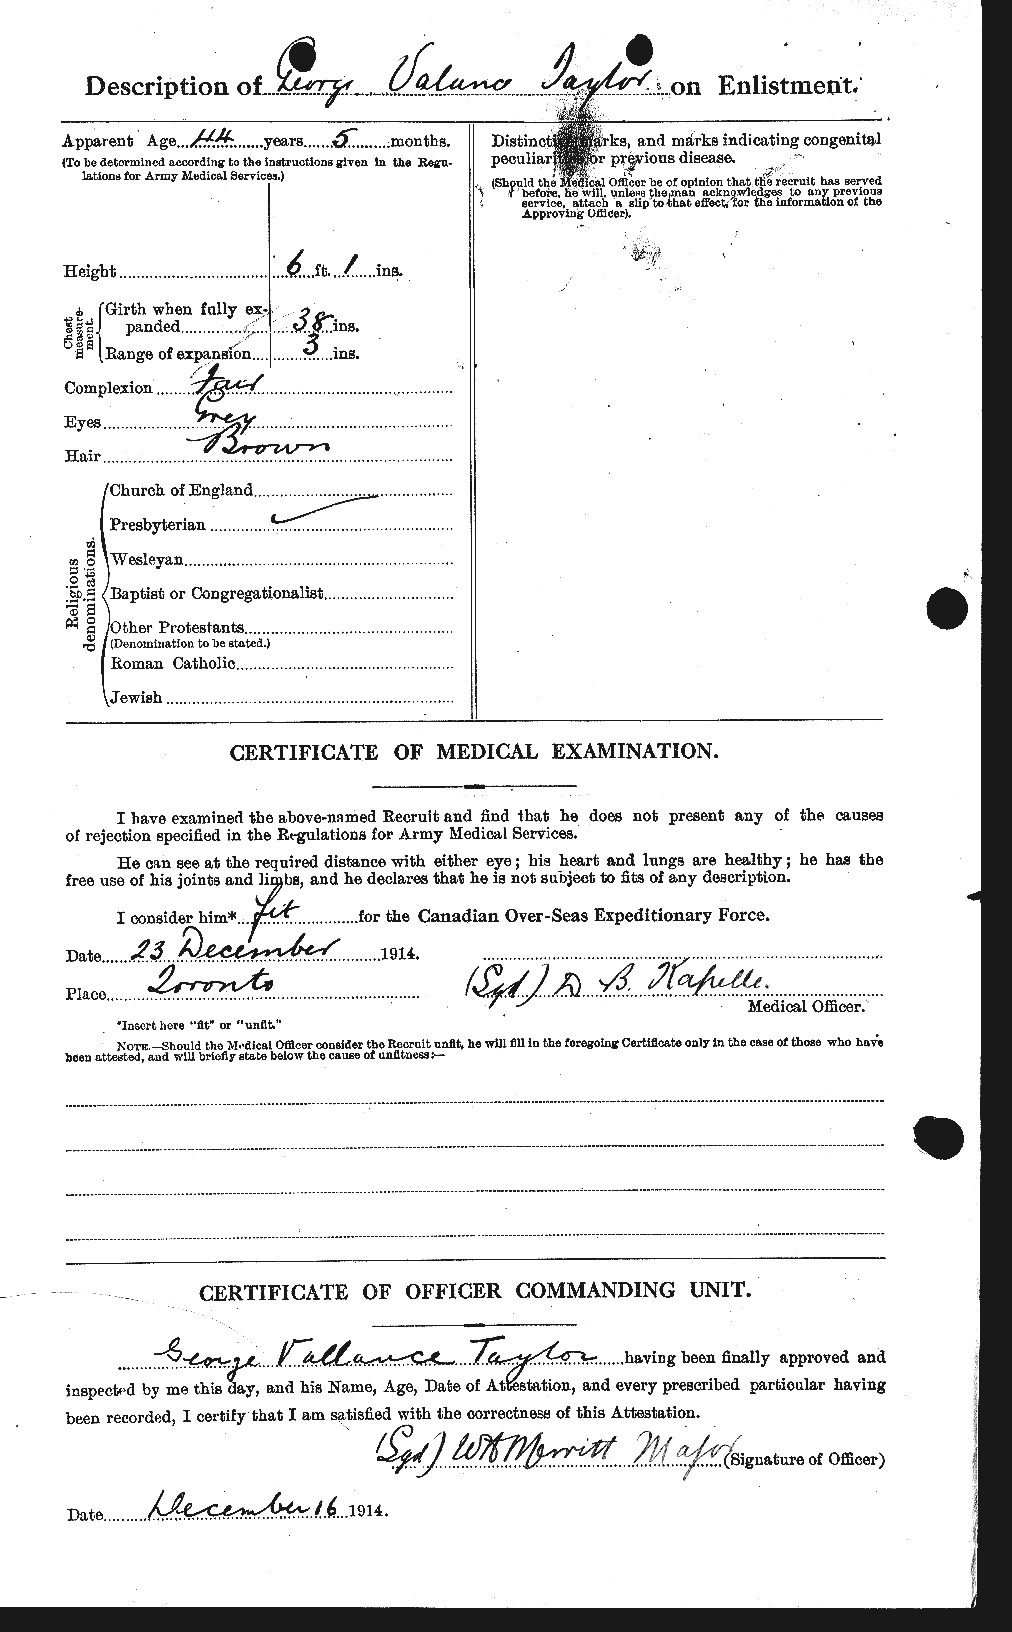 Dossiers du Personnel de la Première Guerre mondiale - CEC 626357b